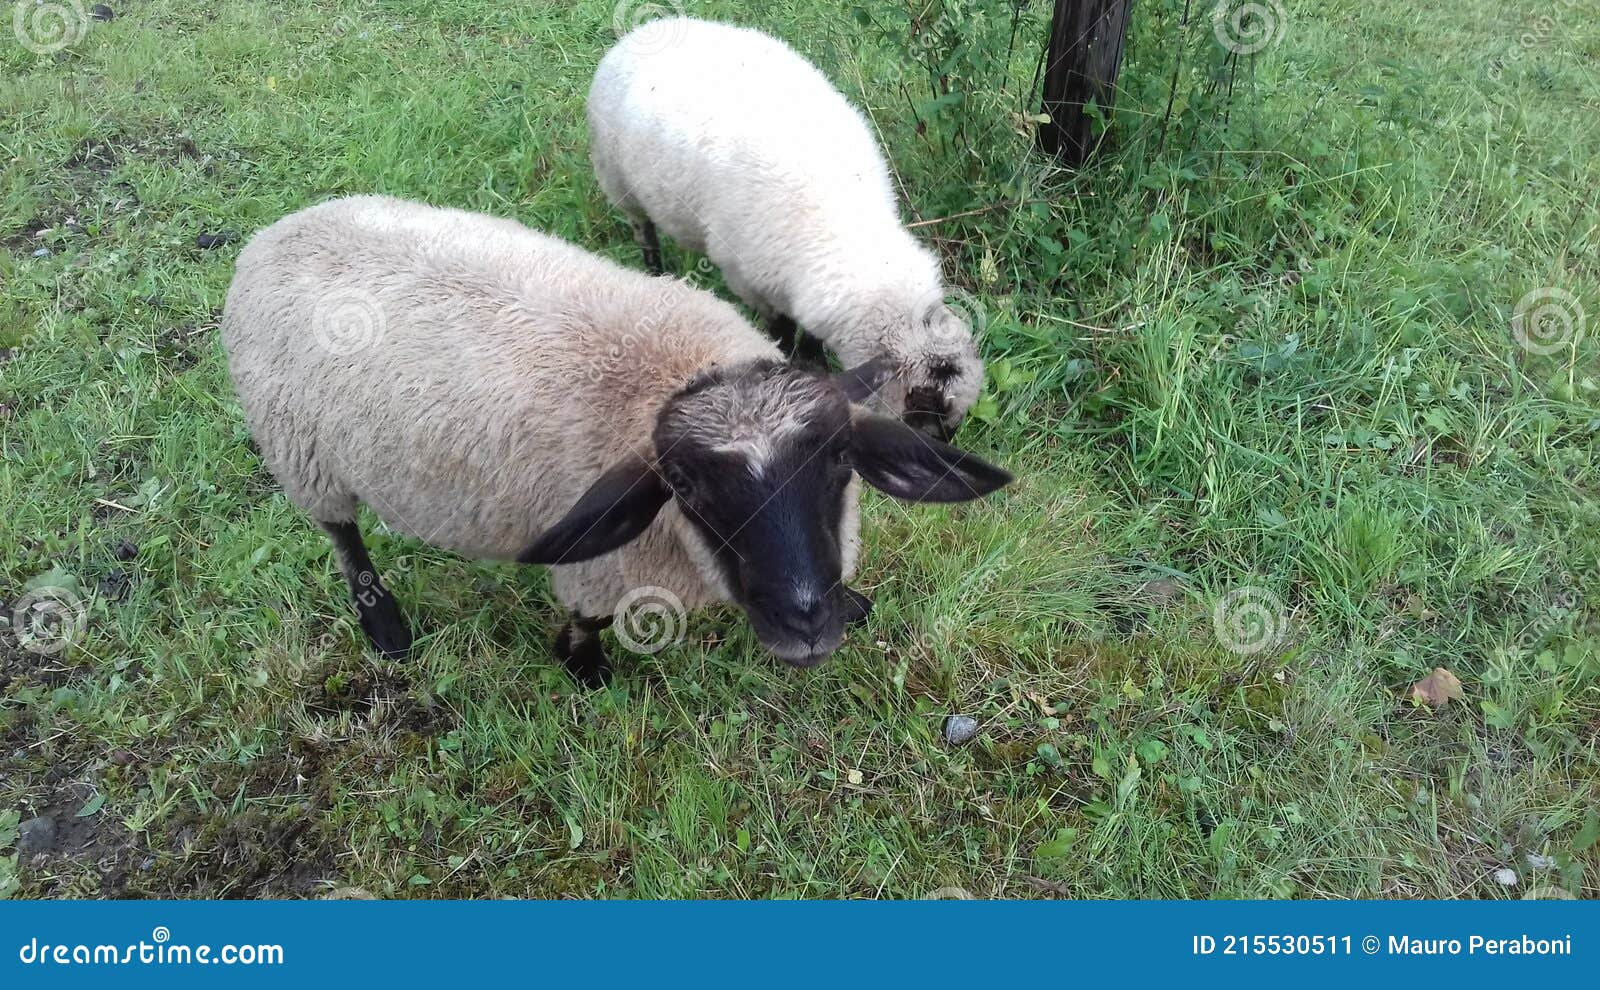 due simpatiche pecore bianche con muso nero